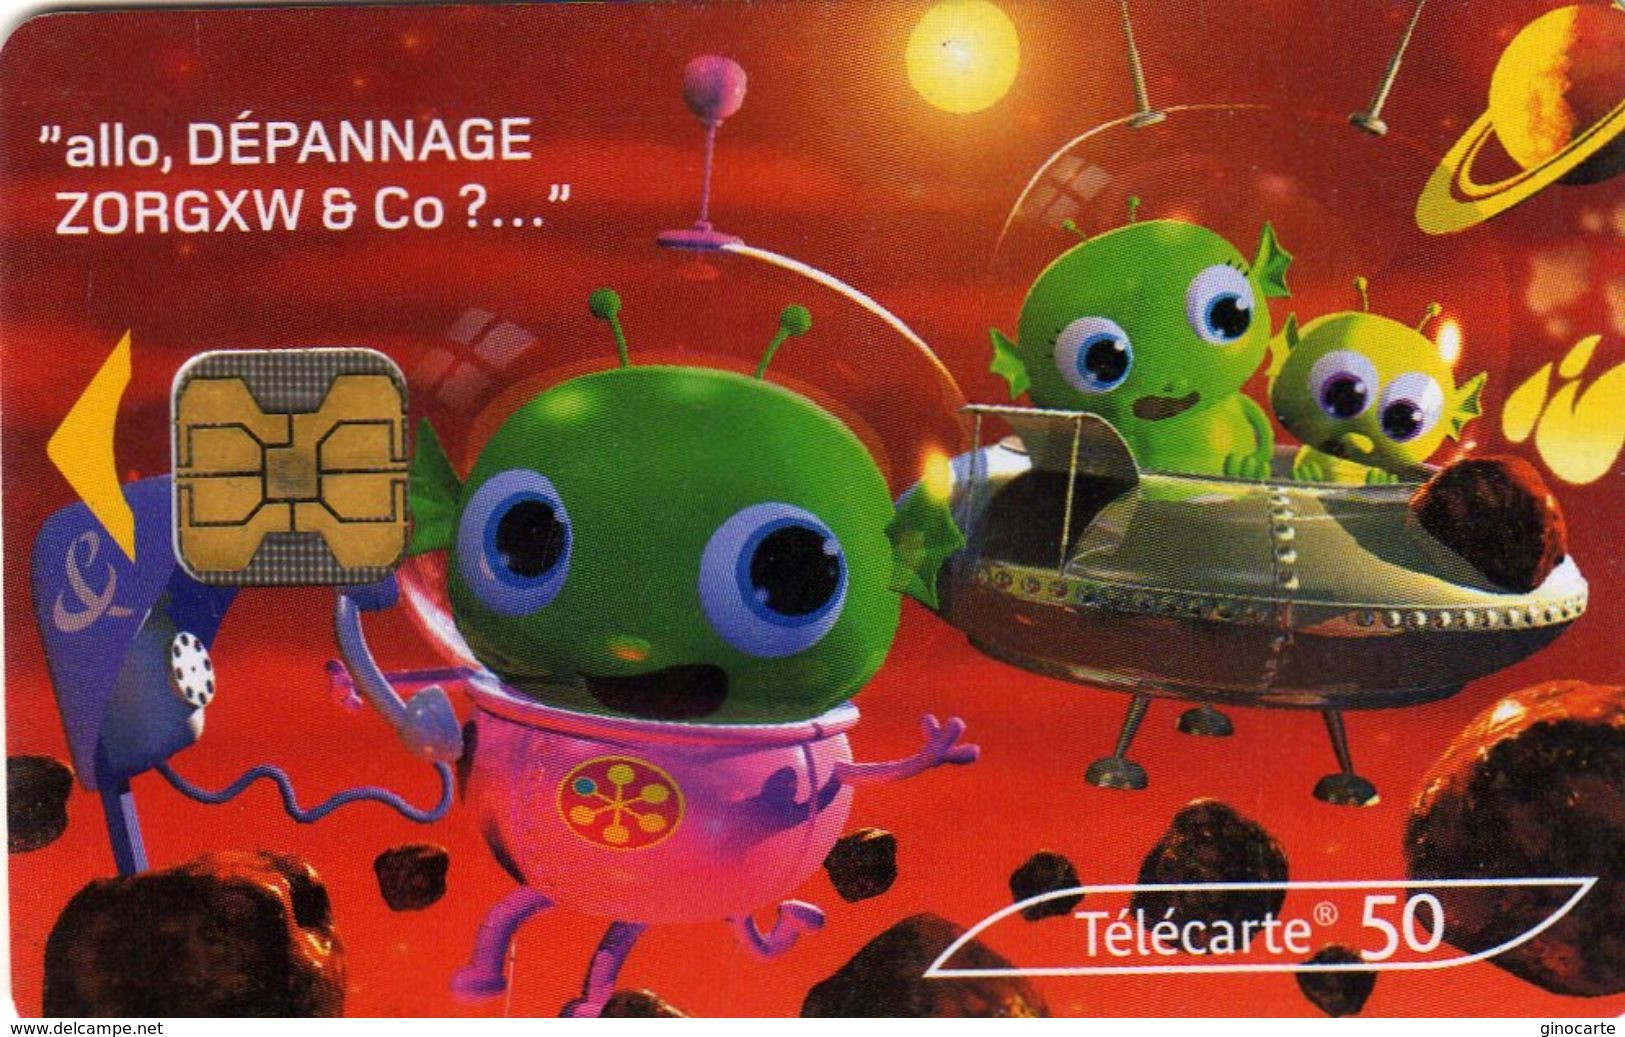 Telecarte Publique France Francaise F 1264 - “600 Agences”